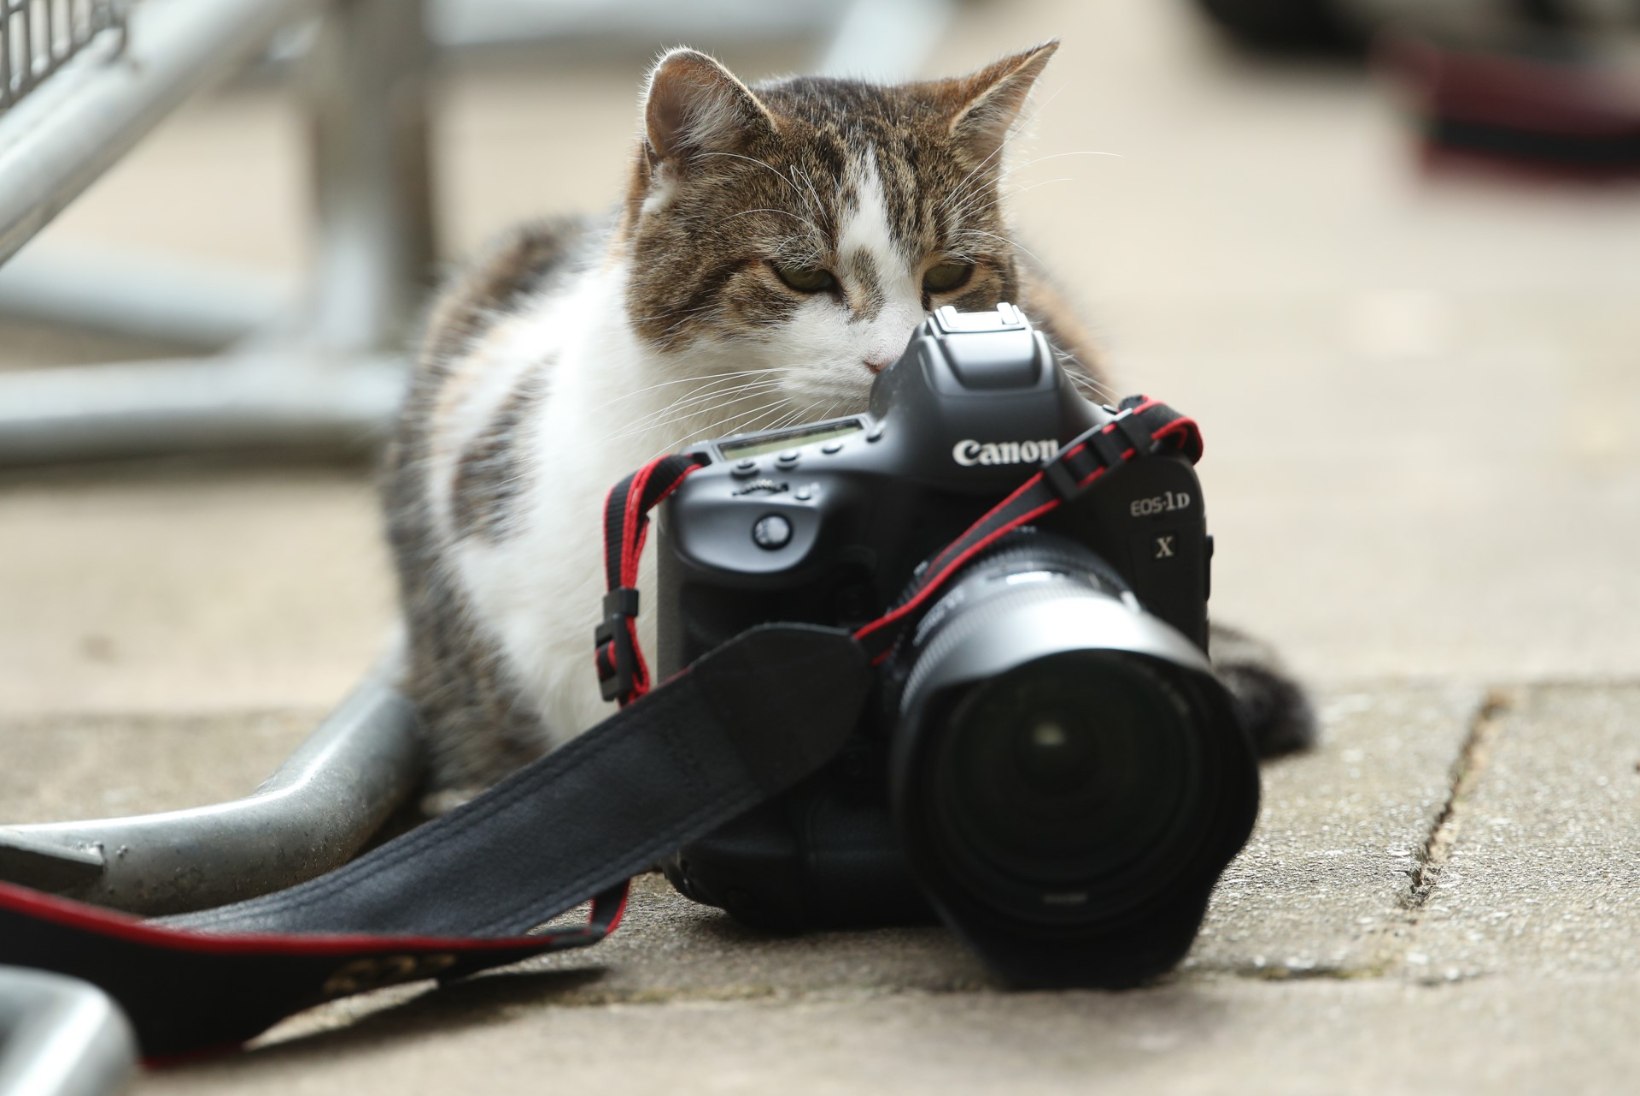 FOTOD | SUUR POLIITJUUBEL! Suurbritannia tähtsaim kass tähistab kümnendat tööaastat